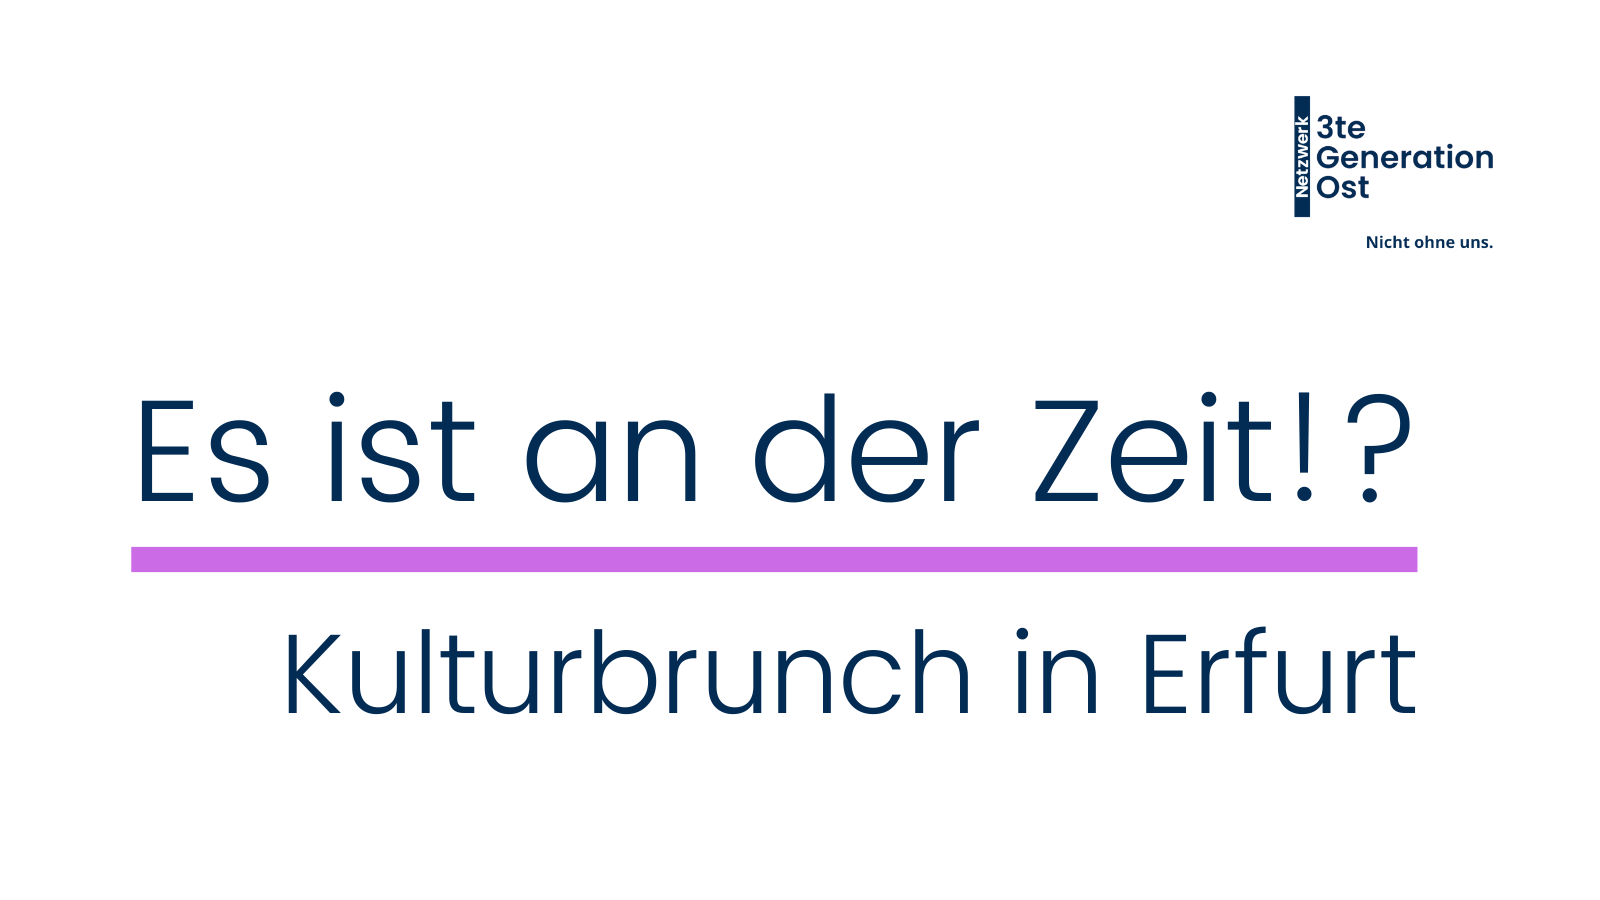 Logo Netzwerk 3te Generation Ost oben rechts. Mittig platziert in dunkelblau - "Es ist an der Zeit!?"- mit lilafarbenen Unterstrich und Untertitel "Kulturbrunch in Erfurt"